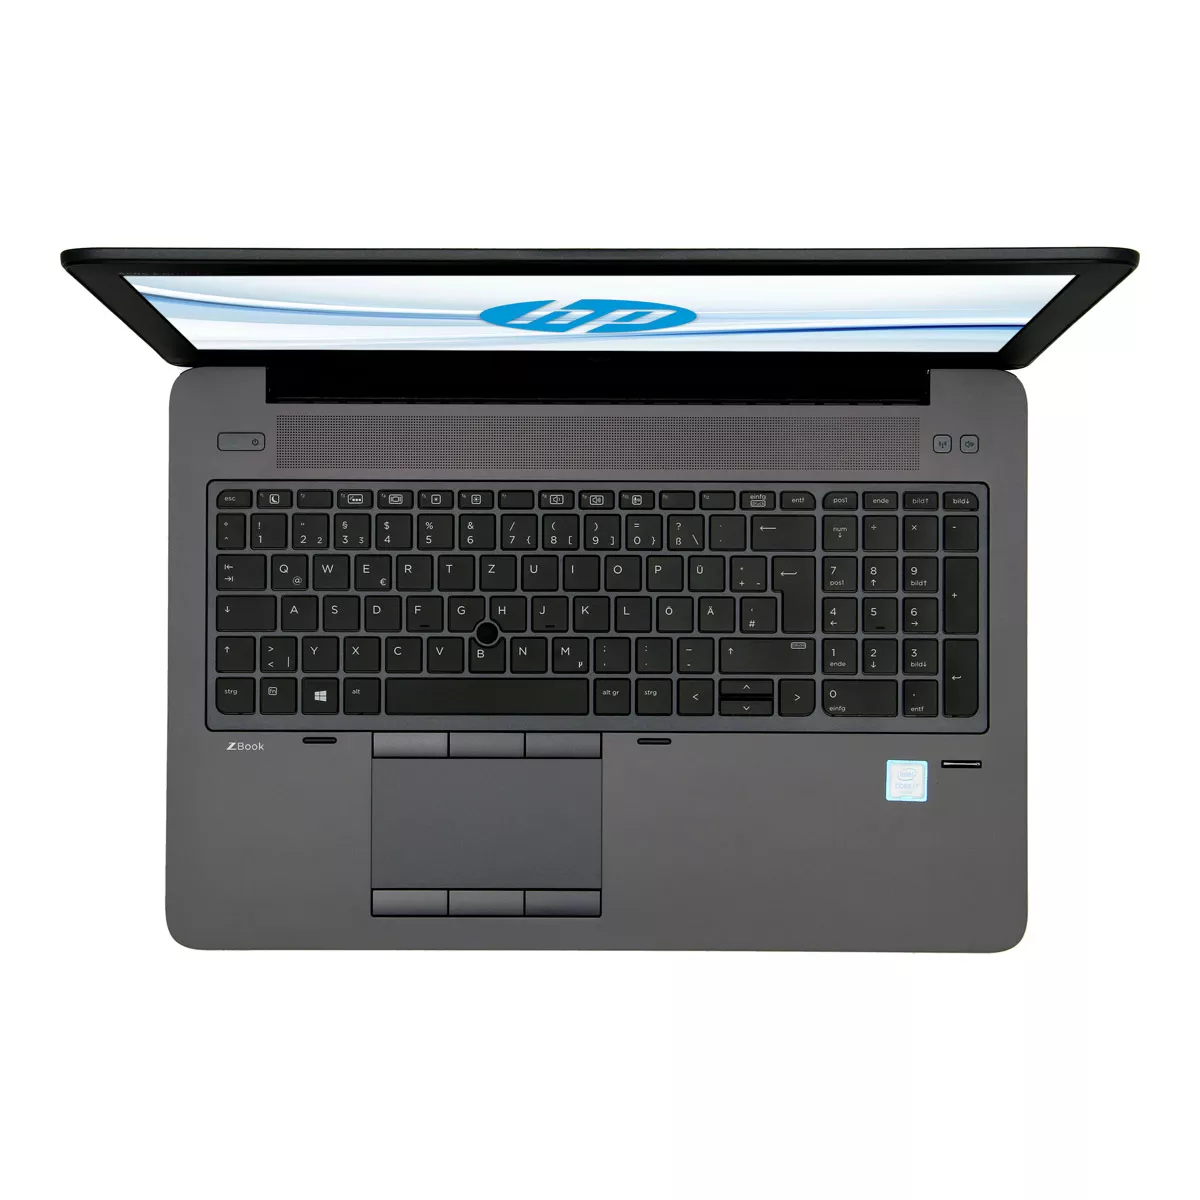 HP ZBook 15 G3 Core i7 6700HQ Full-HD nVidia Quadro M2000M 240 GB M.2 SSD Webcam A+